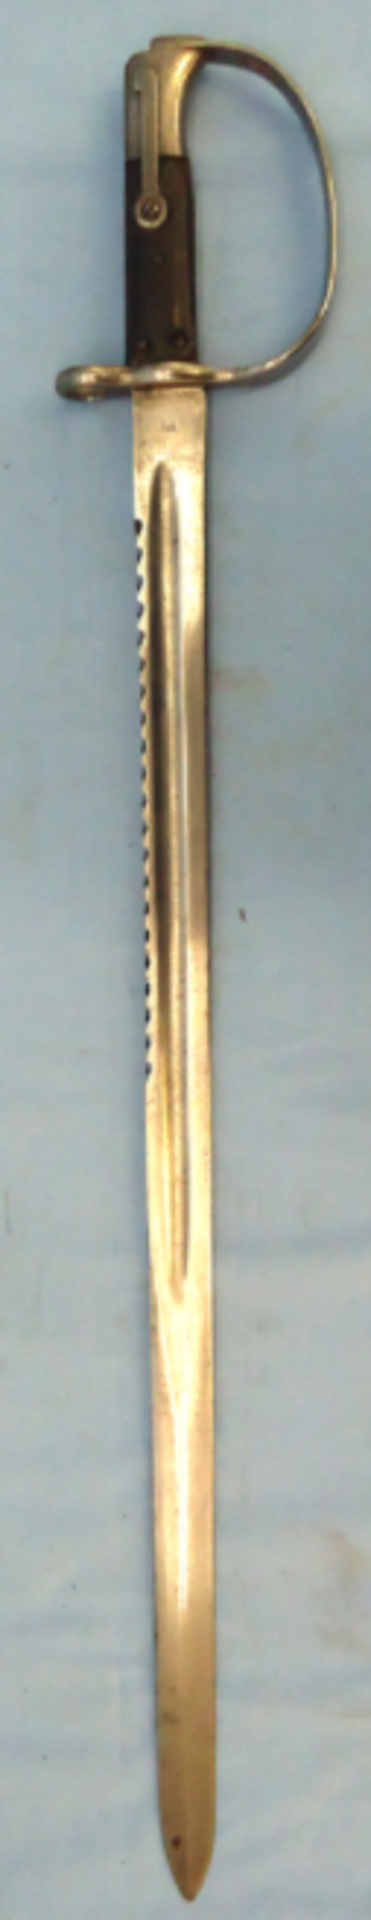 British Martini Henry Pattern 1879 Artillery Sawback Bayonet.